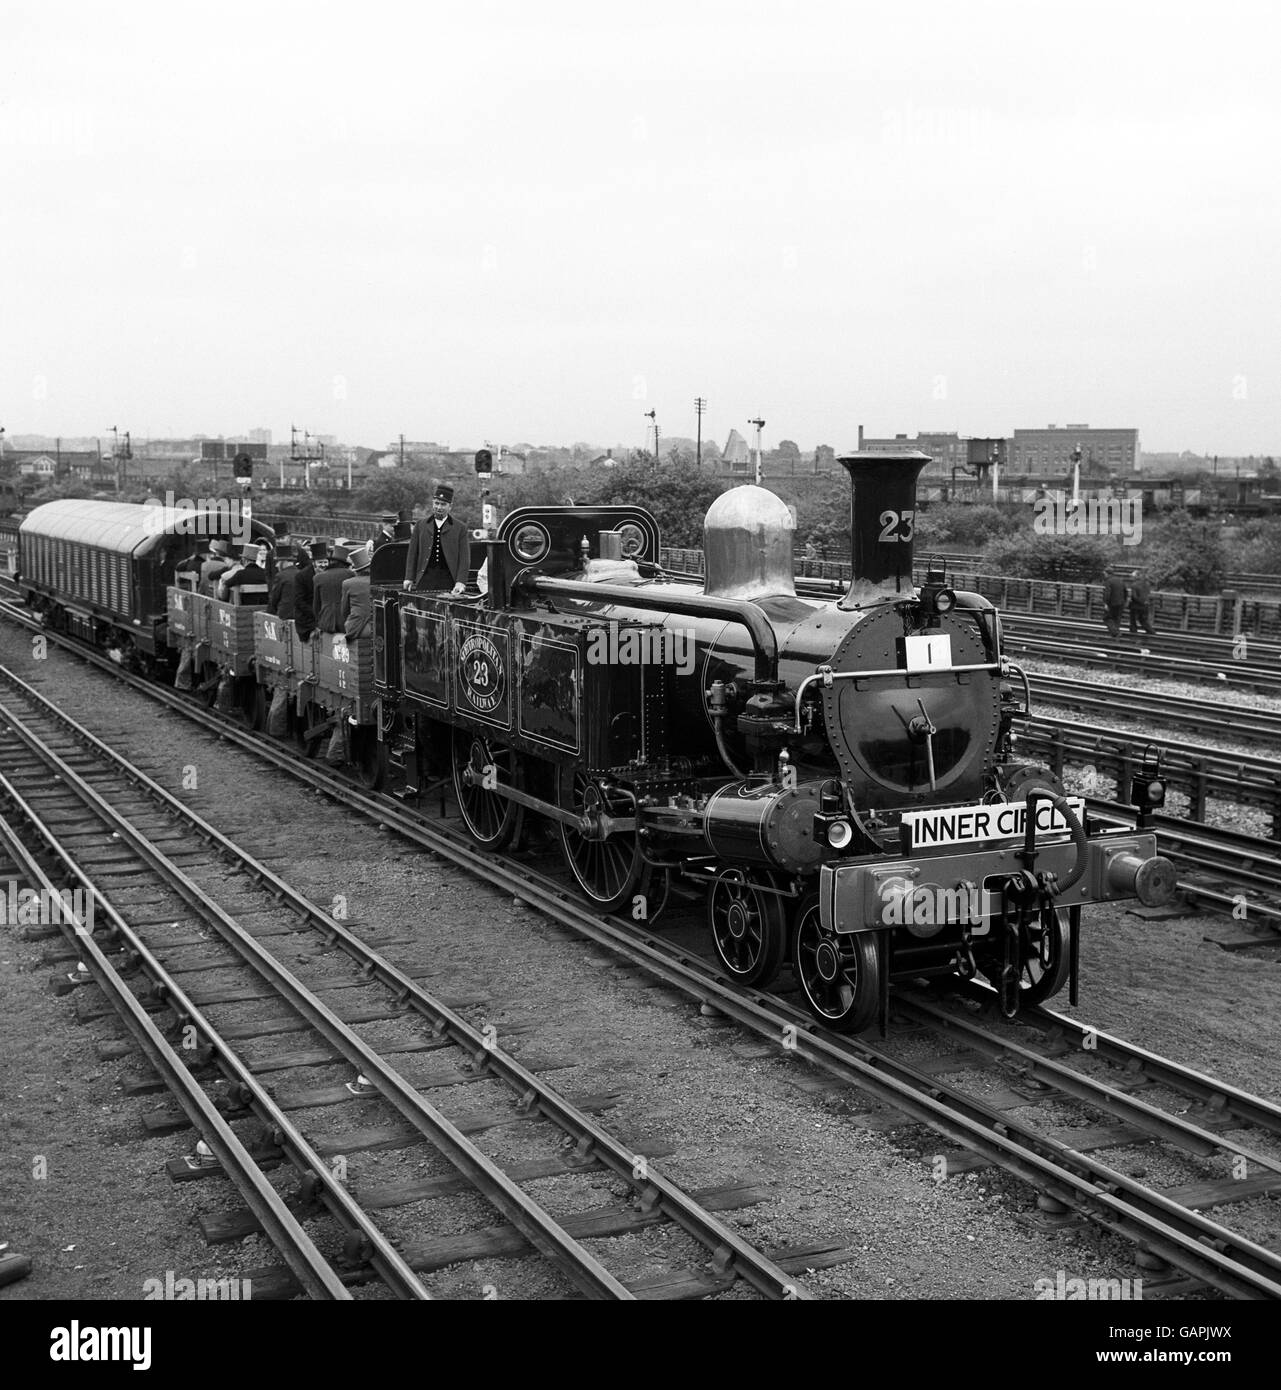 La locomotora No.23, un motor Metropolitano de Clase 'A', construido en Manchester en 1866, encabeza un especial centenario en Neasden como parte de un gran desfile de material rodante pasado y presente para conmemorar el 100th aniversario del Metro de Londres. Foto de stock